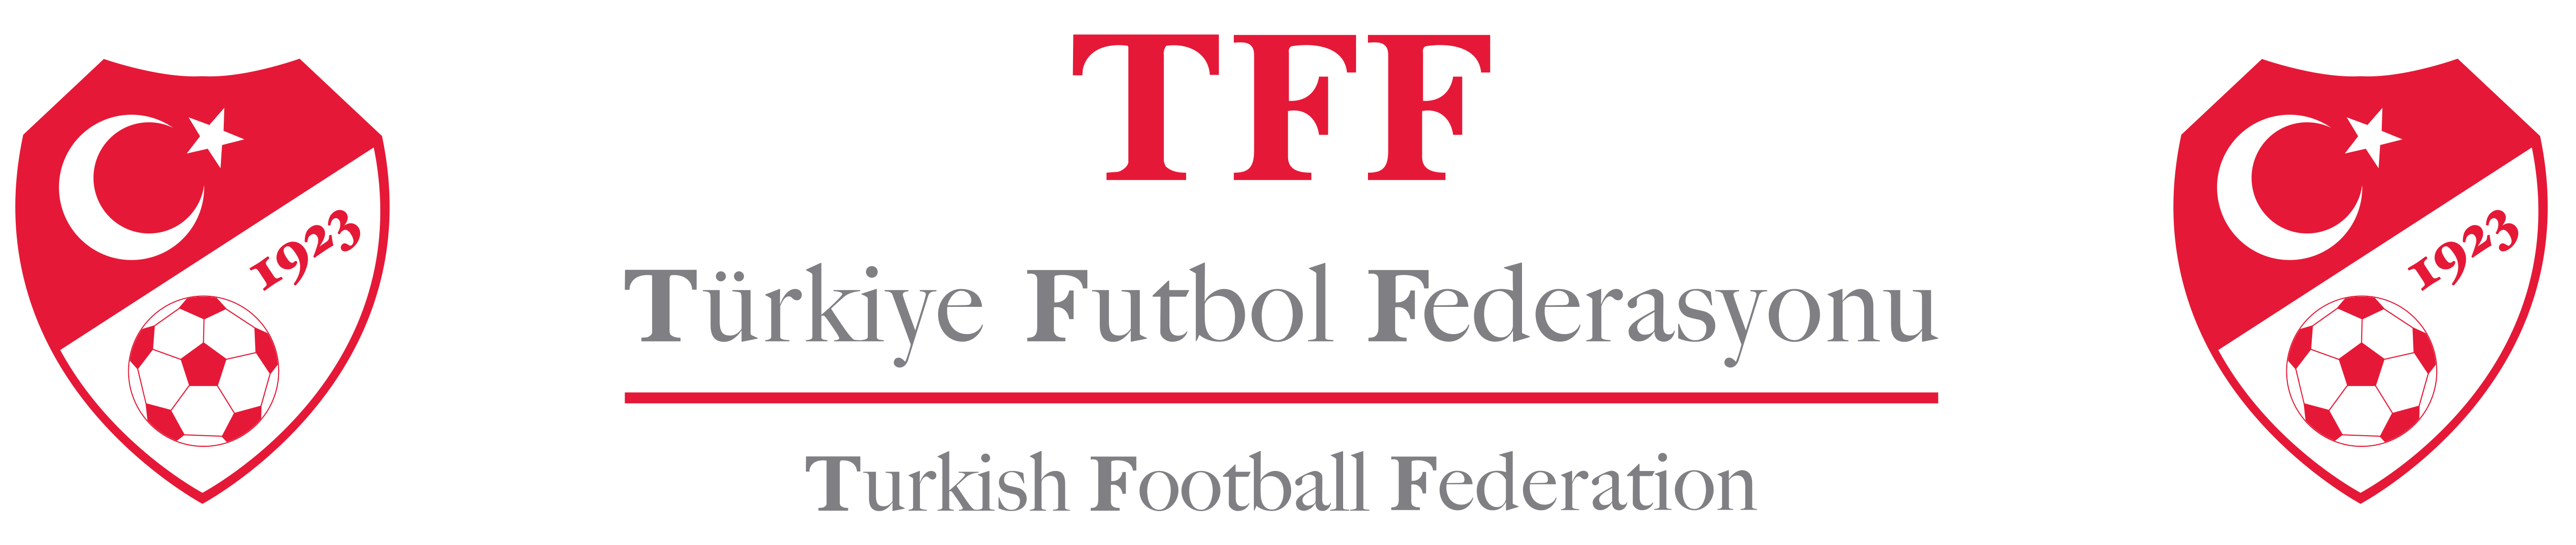 TFF Logo Kullanımları - Lig Logoları TFF